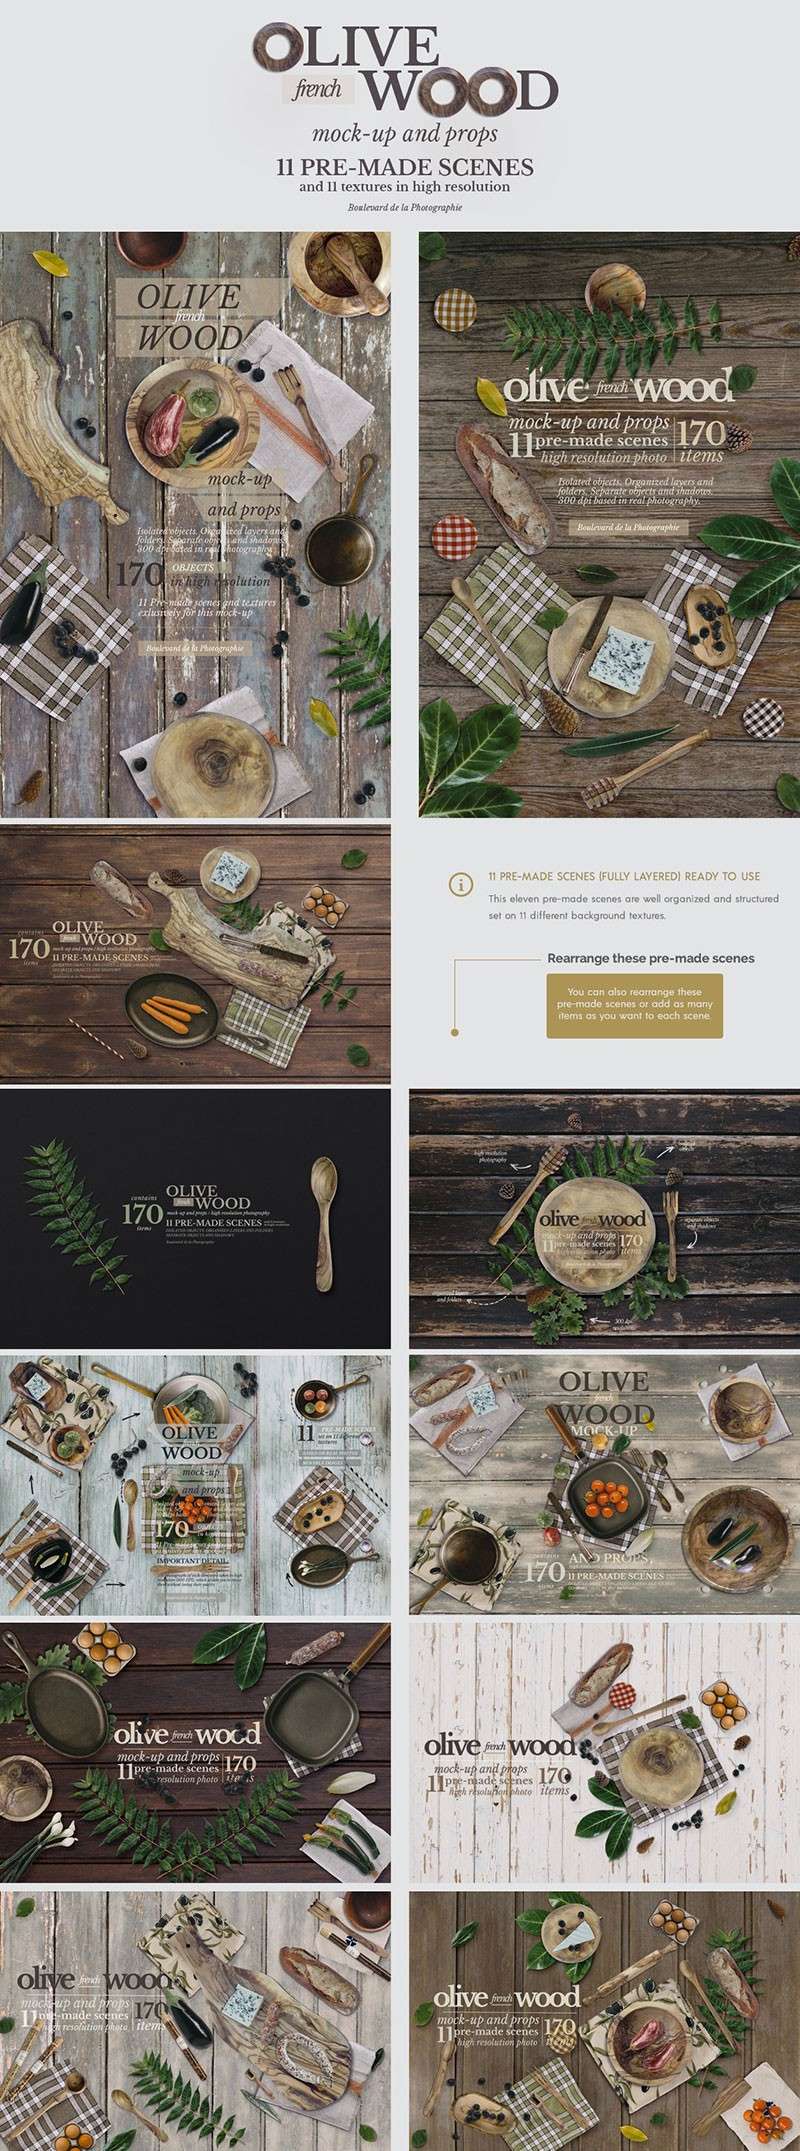 高端木制餐具厨具图片素材PSD格式 图片素材 第3张